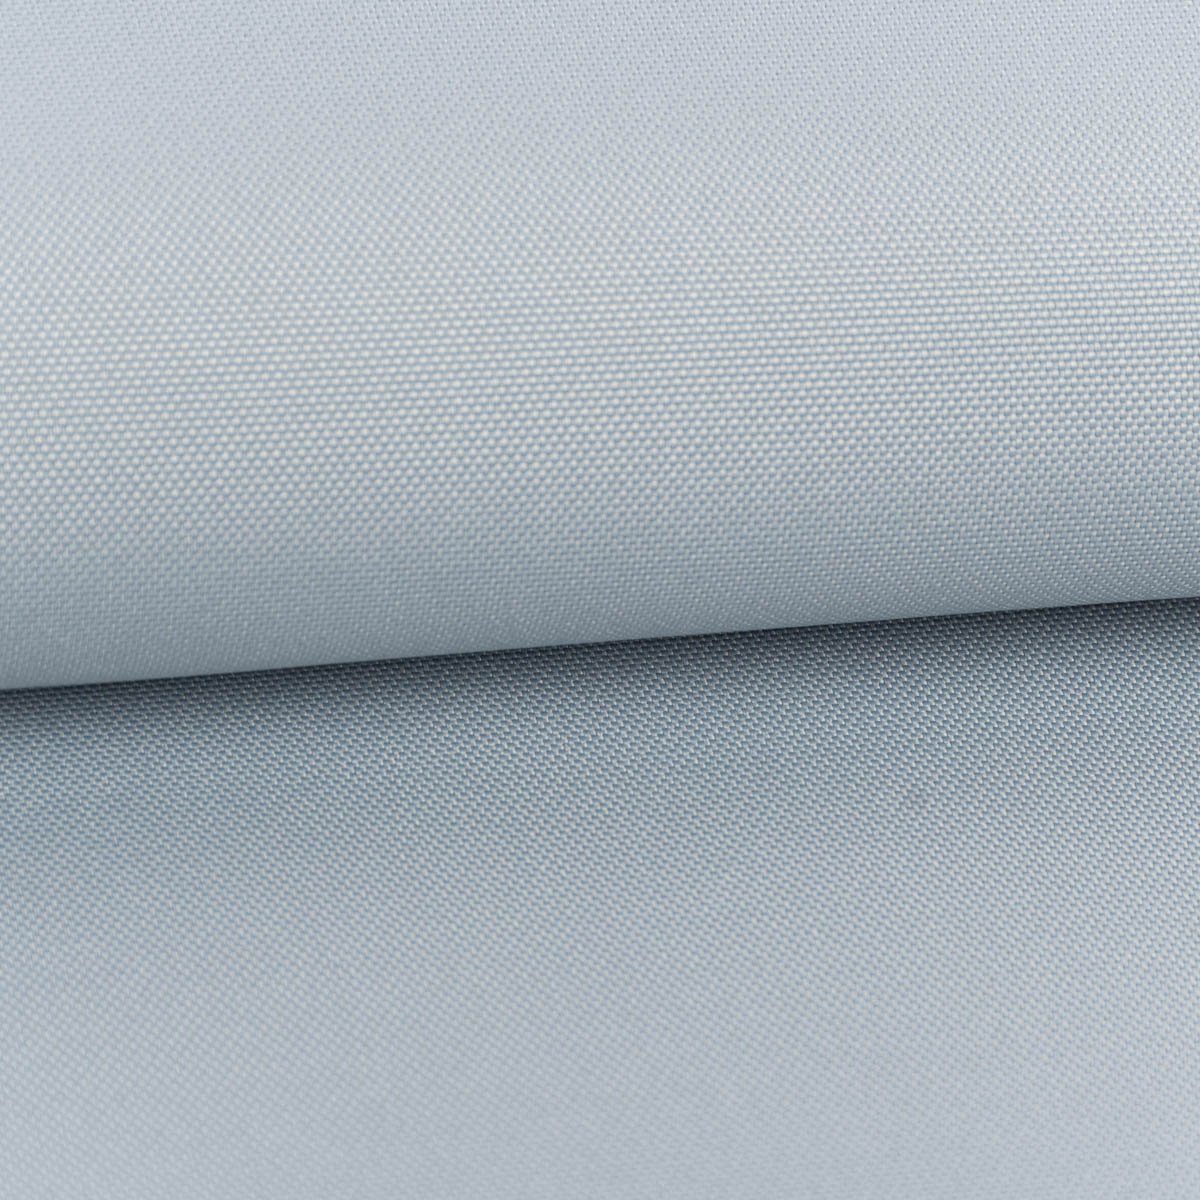 SCHÖNER LEBEN. Stoff Outdoor Stoff Waterproof wasserdicht Polyester uni eis blau 1,45m Br., abwaschbar